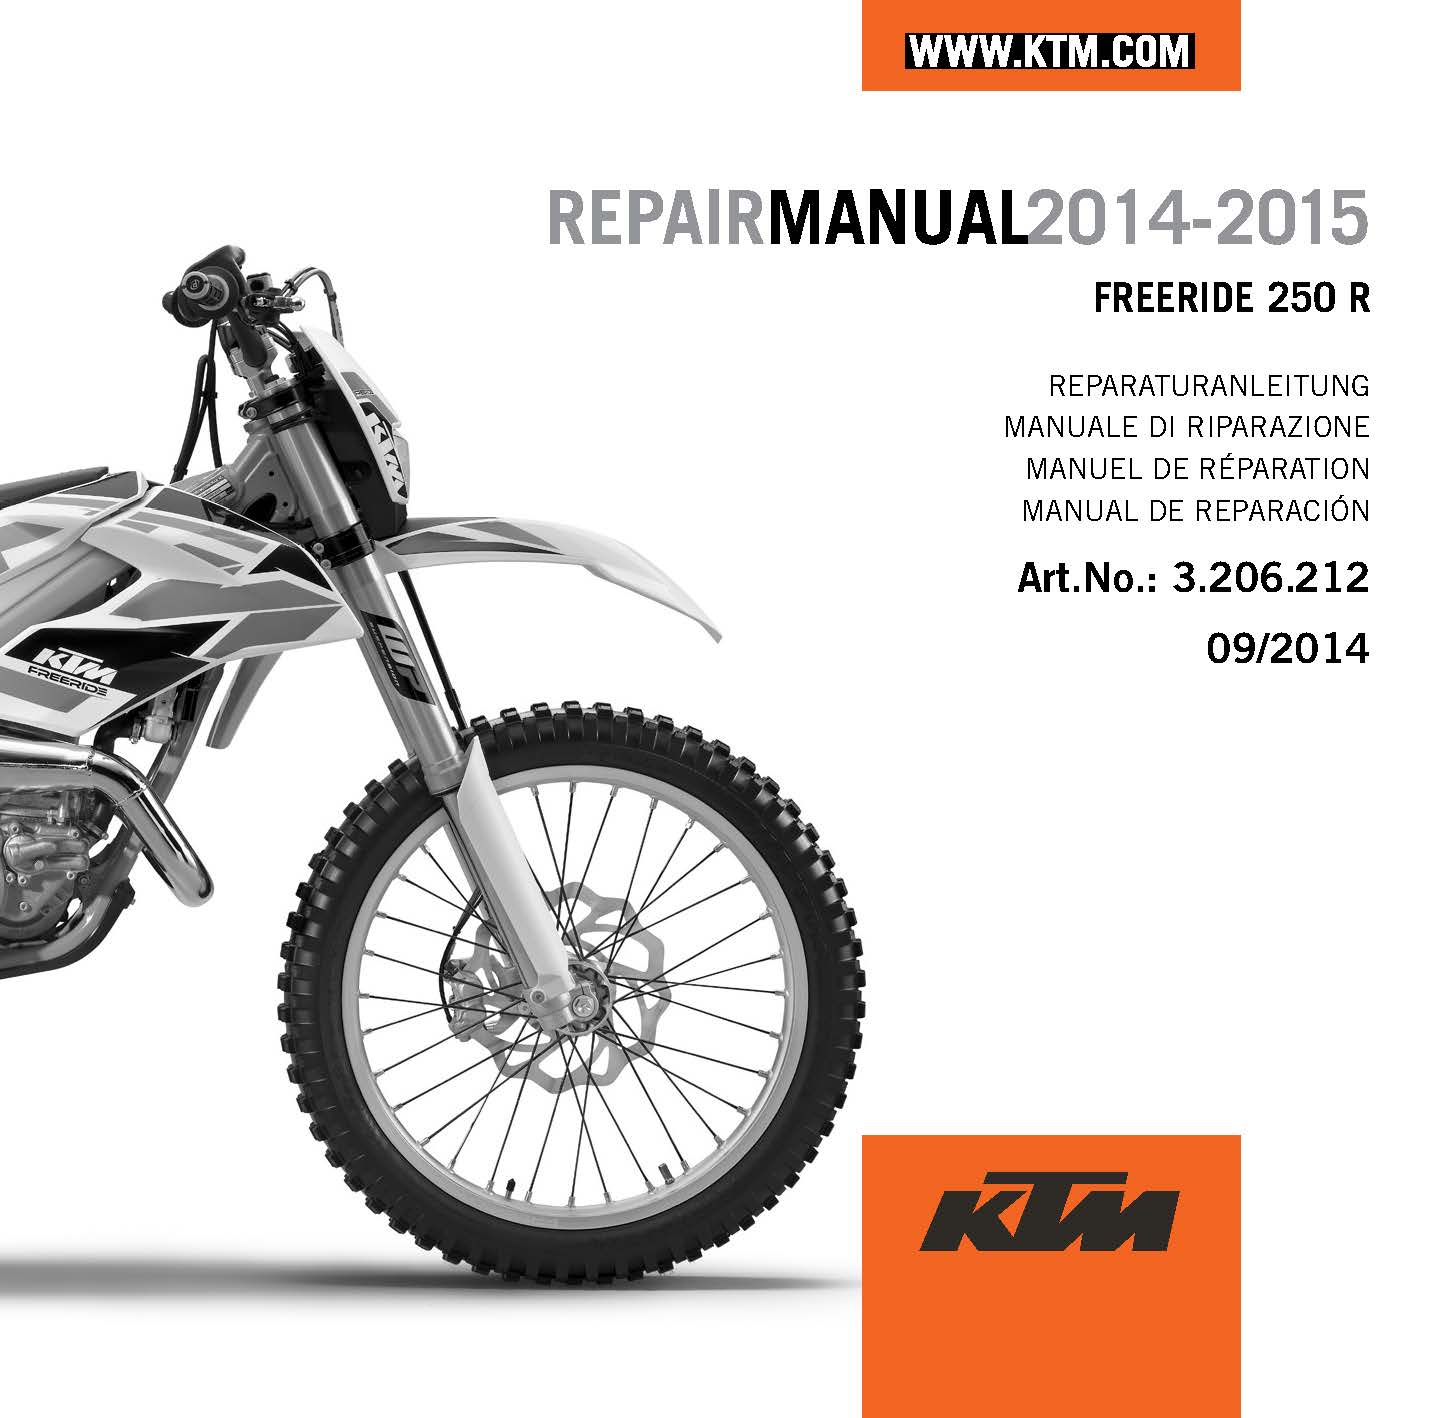 Main image of KTM CD Repair Manual Freeride 250 R US 2014-2015